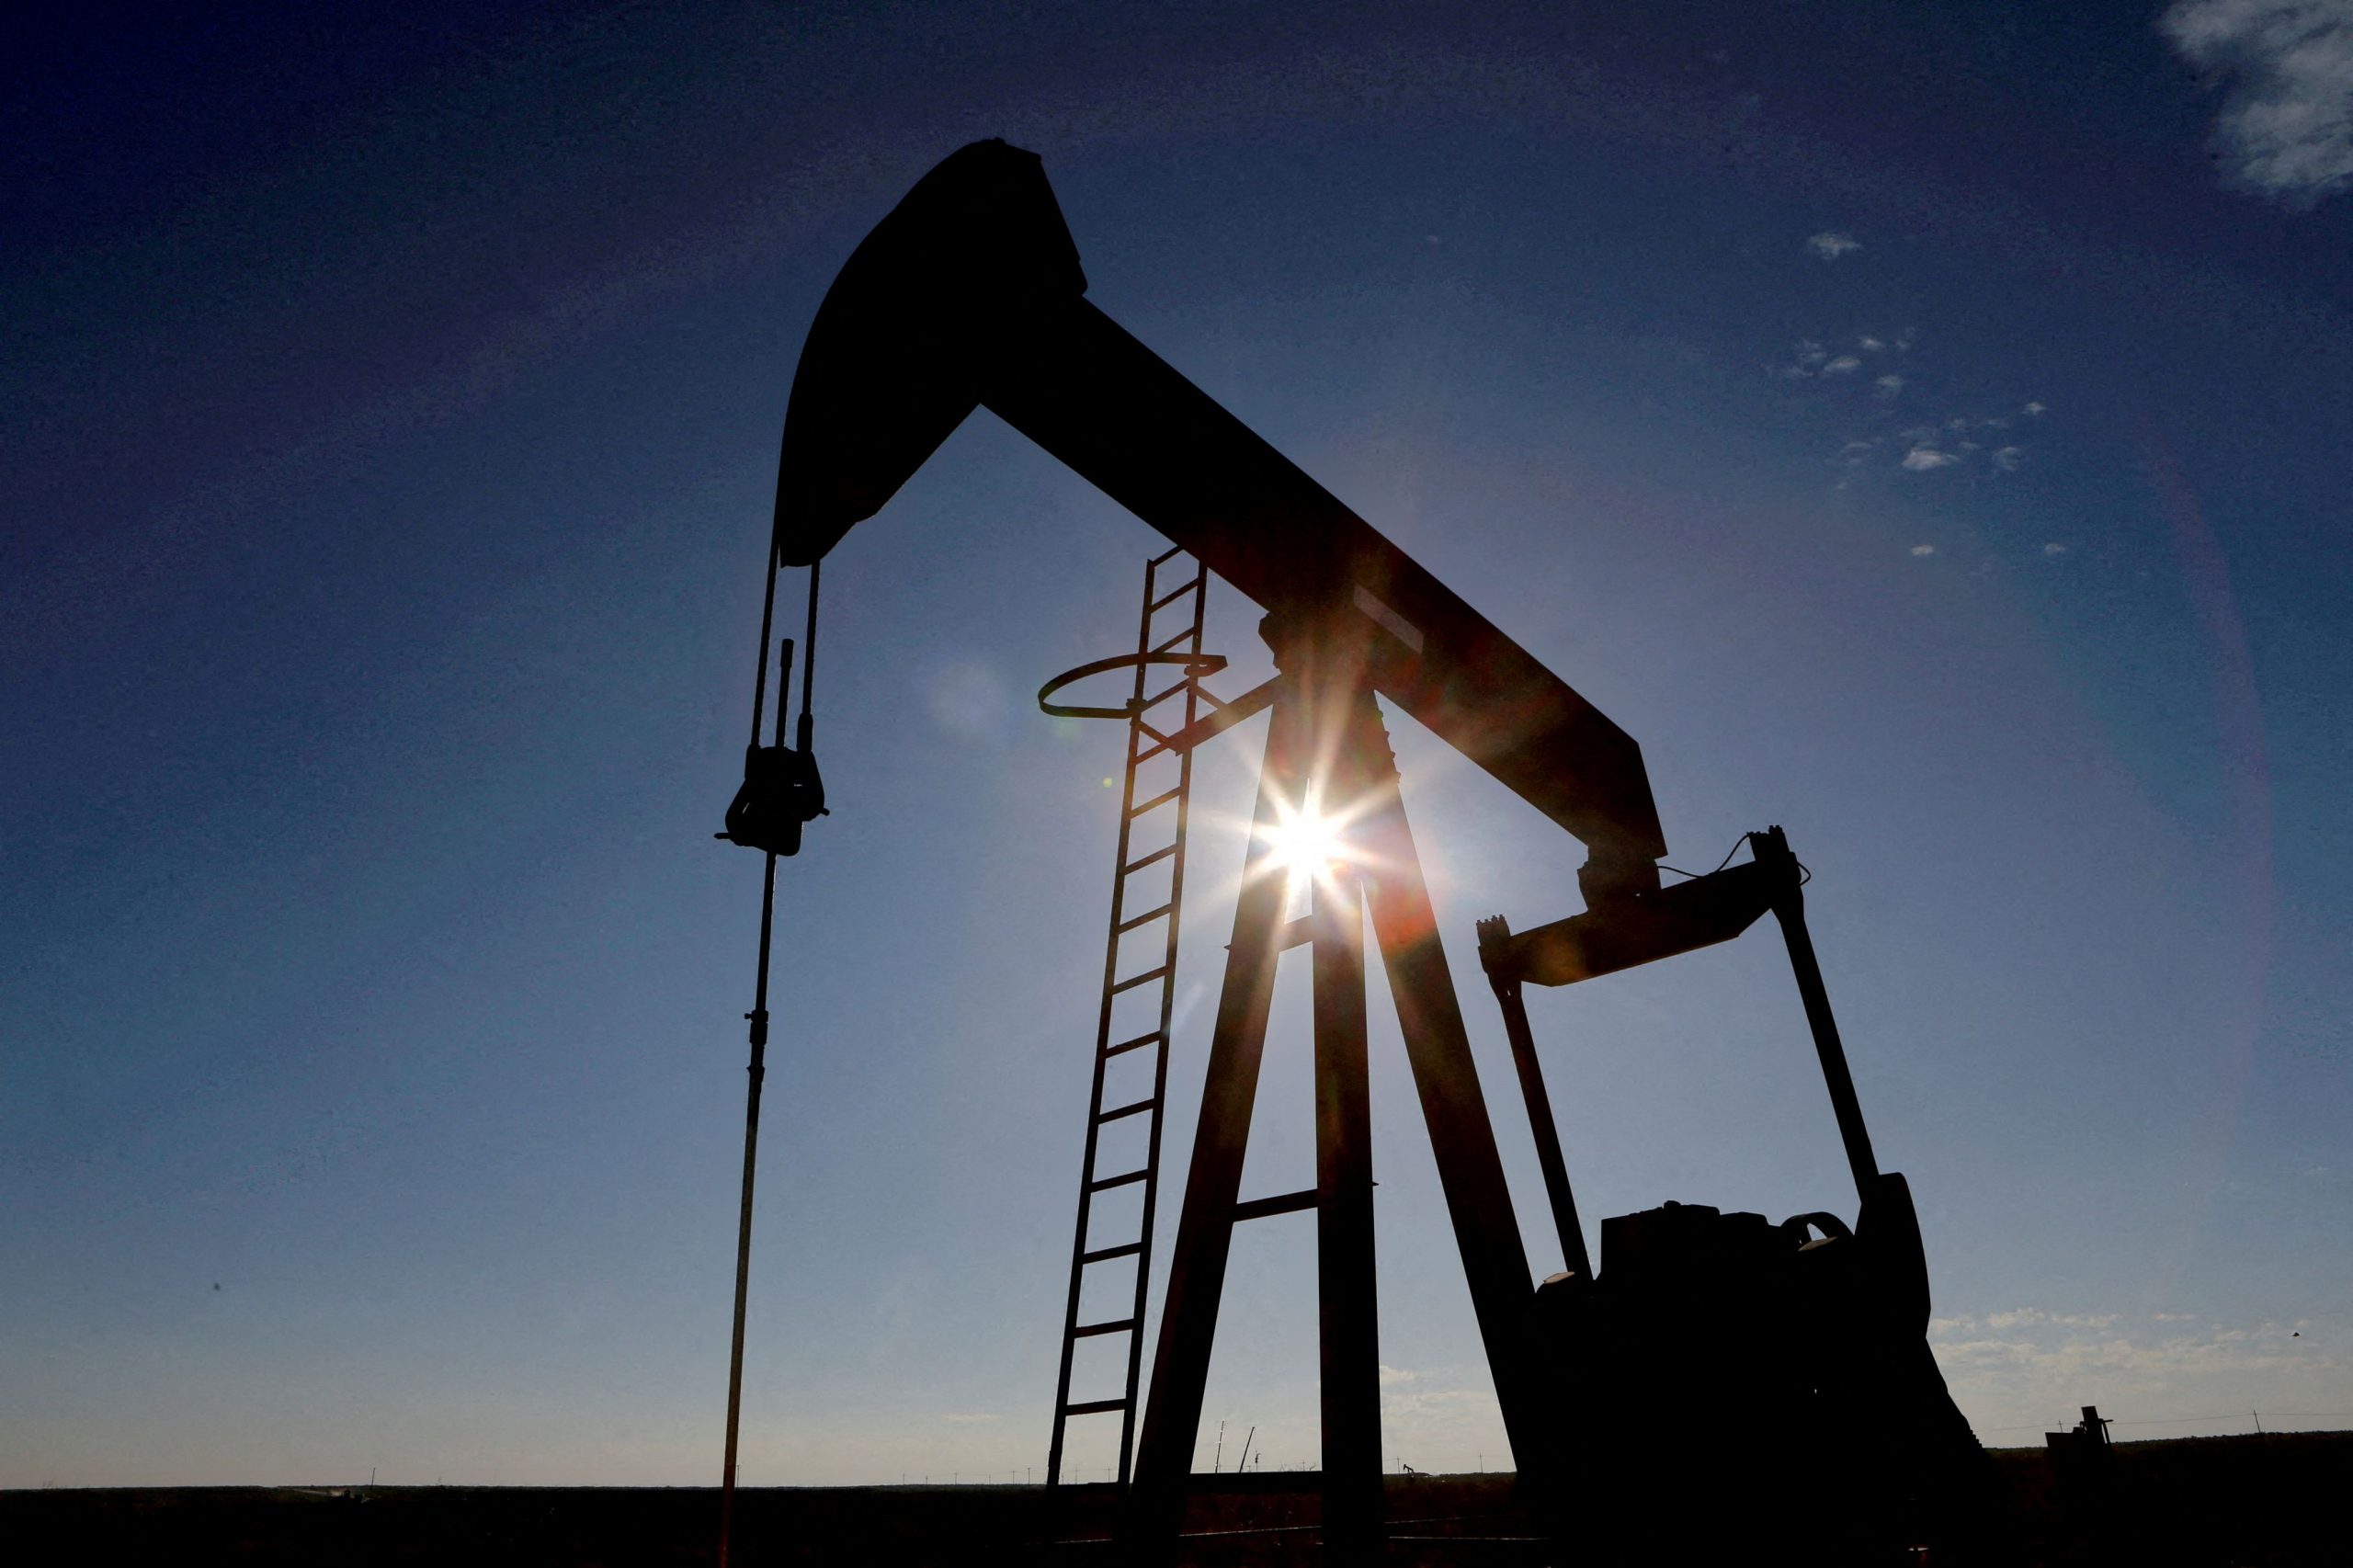 Πετρέλαιο: Ενισχύονται οι τιμές του